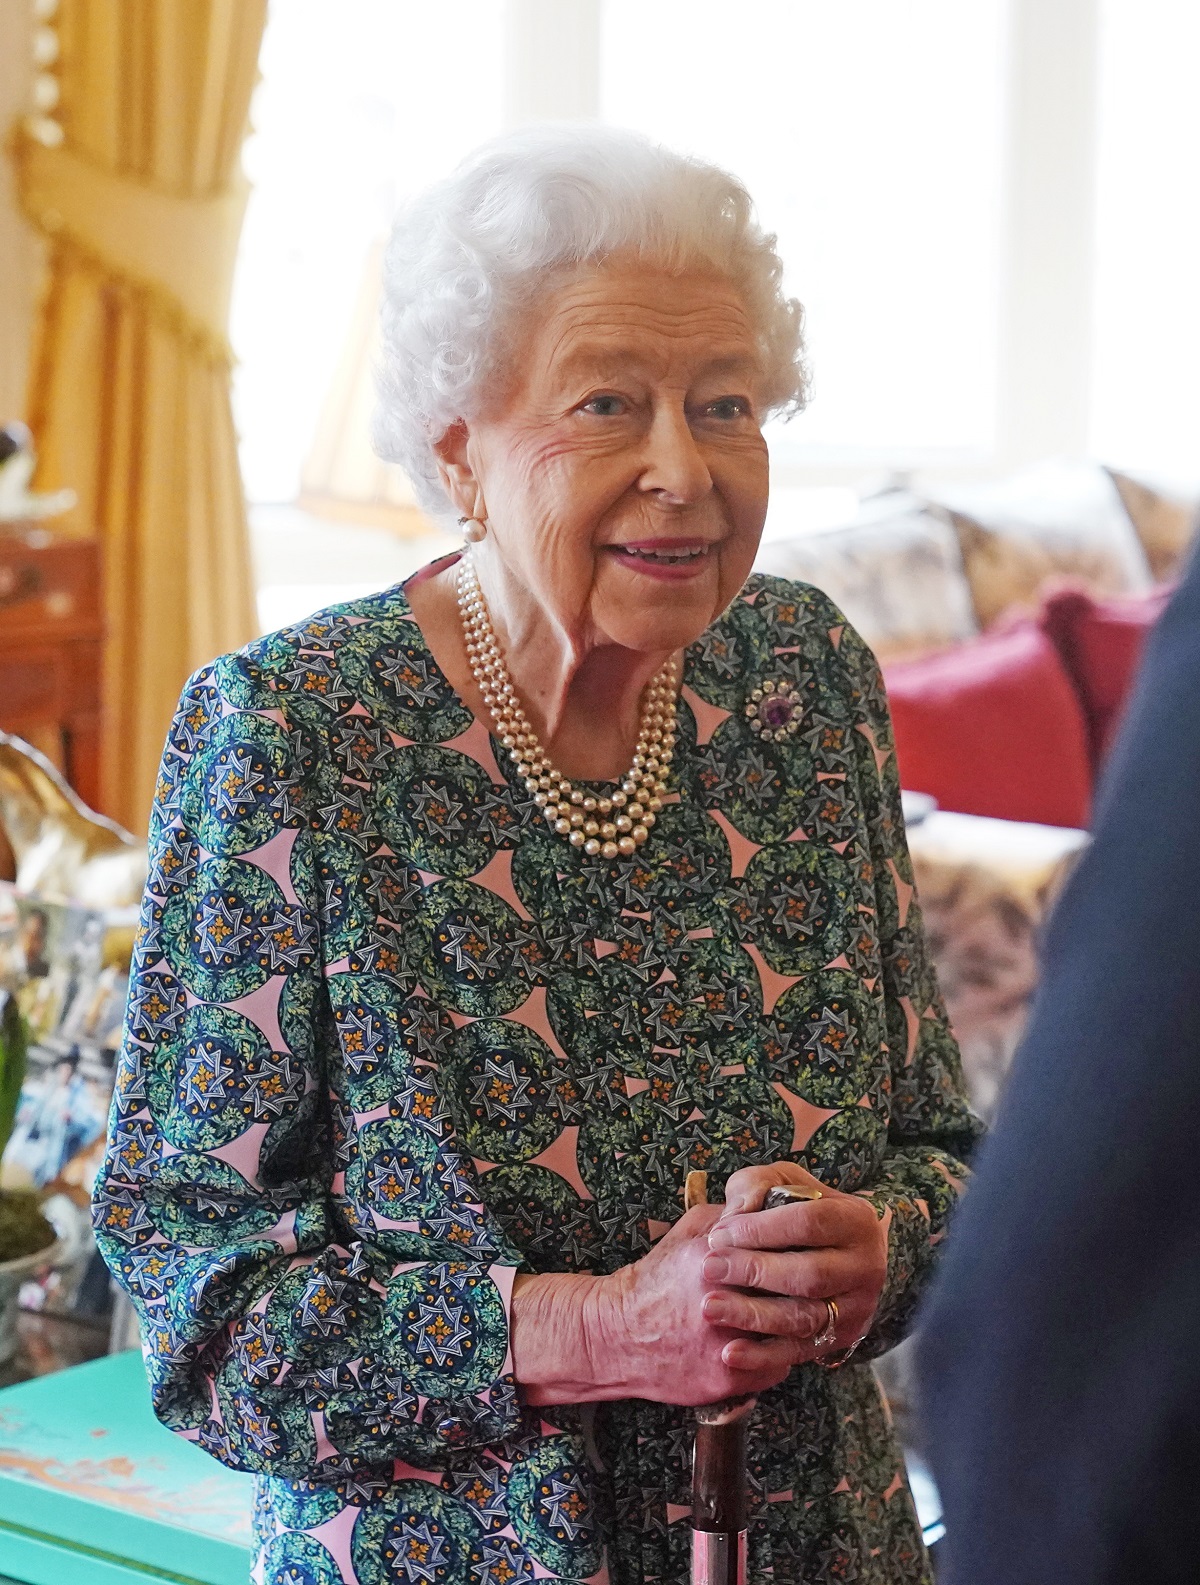 Regina Elisabeta într-o rochie cu imprimeu floral a avut prima întâlnire oficială de la Castelul Windsor după ce fiul său a fost diagnosticat cu COVID-19